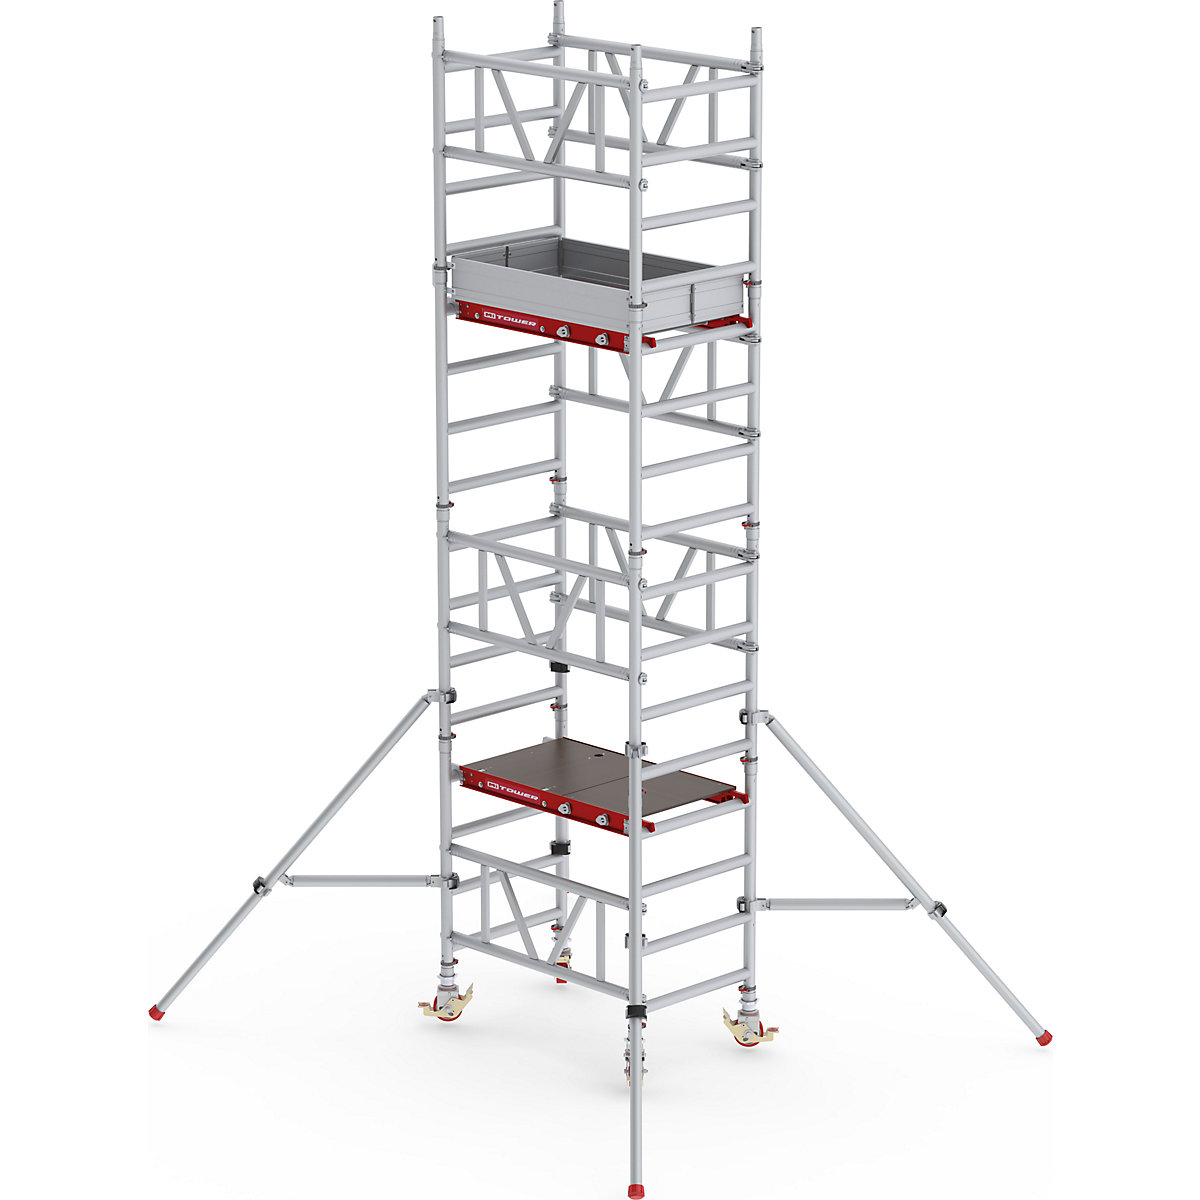 Ruchome rusztowanie do szybkiego montażu MiTOWER Standard – Altrex, platforma drewniana, dł. x szer. 1200 x 750 mm, wys. robocza 5 m-25